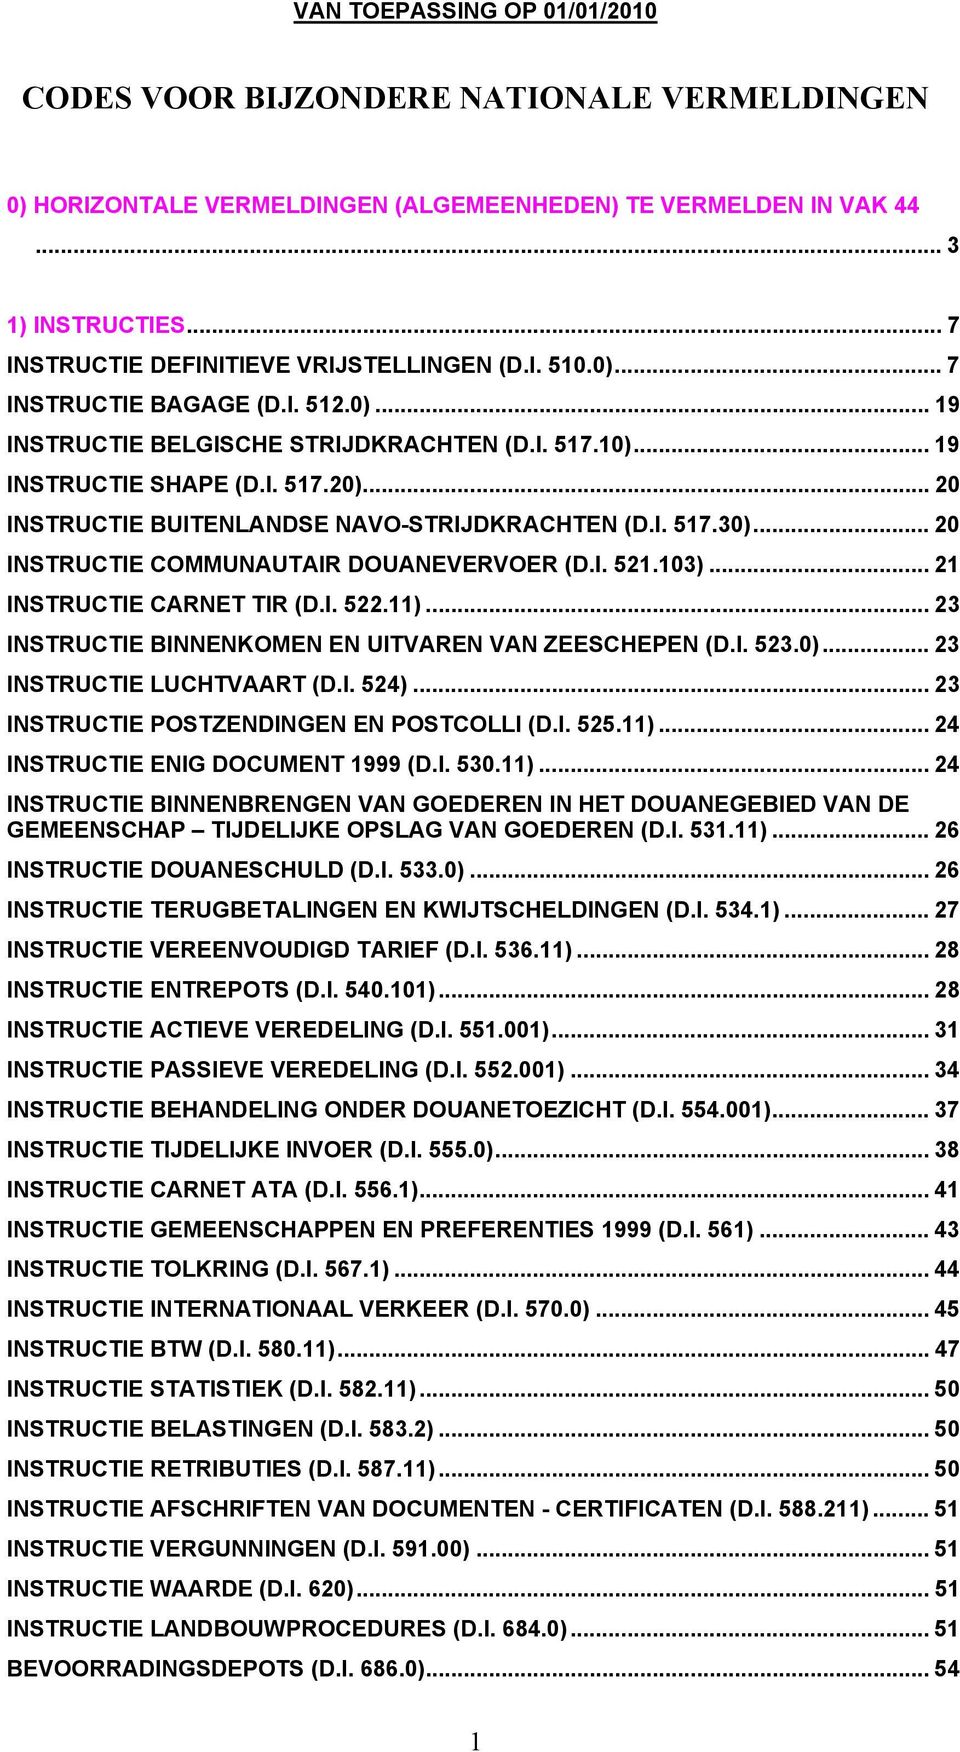 .. 20 INSTRUCTIE COMMUNAUTAIR DOUANEVERVOER (D.I. 521.103)... 21 INSTRUCTIE CARNET TIR (D.I. 522.11)... 23 INSTRUCTIE BINNENKOMEN EN UITVAREN VAN ZEESCHEPEN (D.I. 523.0)... 23 INSTRUCTIE LUCHTVAART (D.